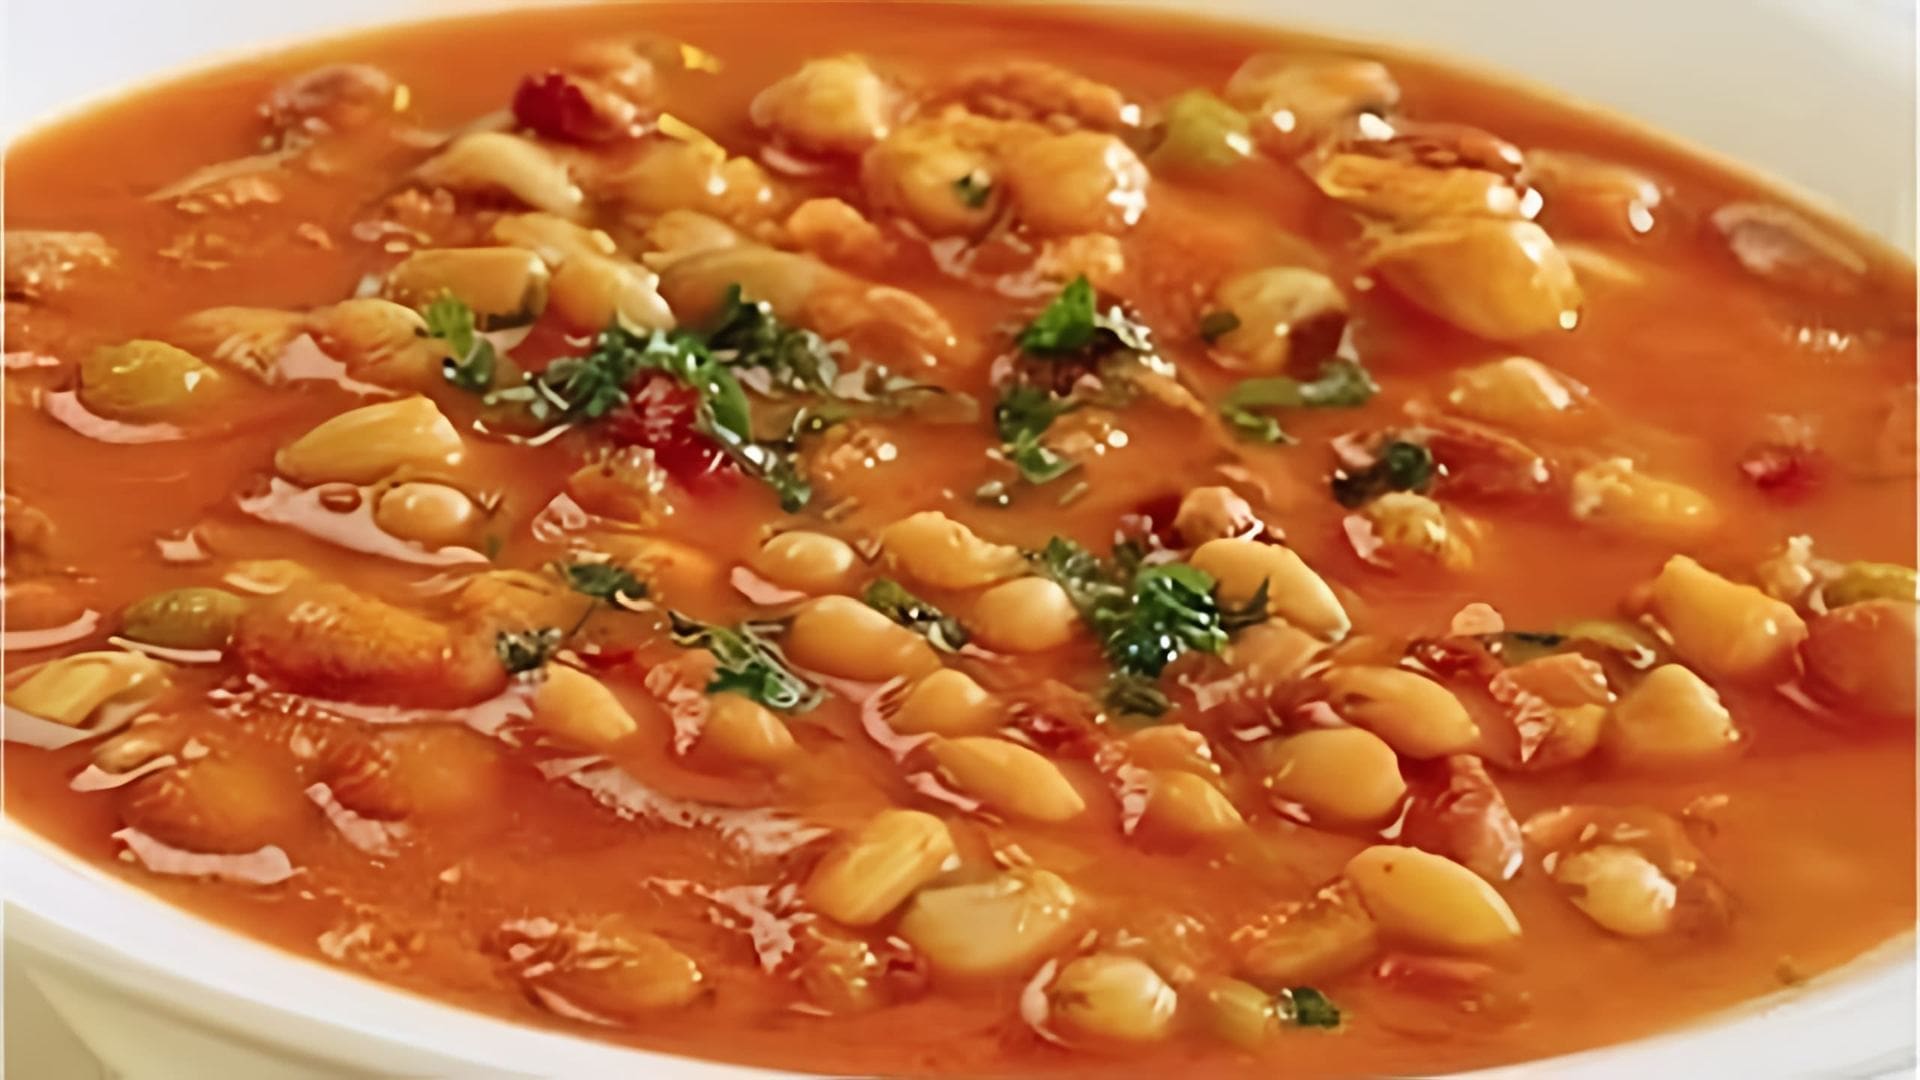 Суп из фасоли в томатном соусе - это вкусное и питательное блюдо, которое можно приготовить в домашних условиях